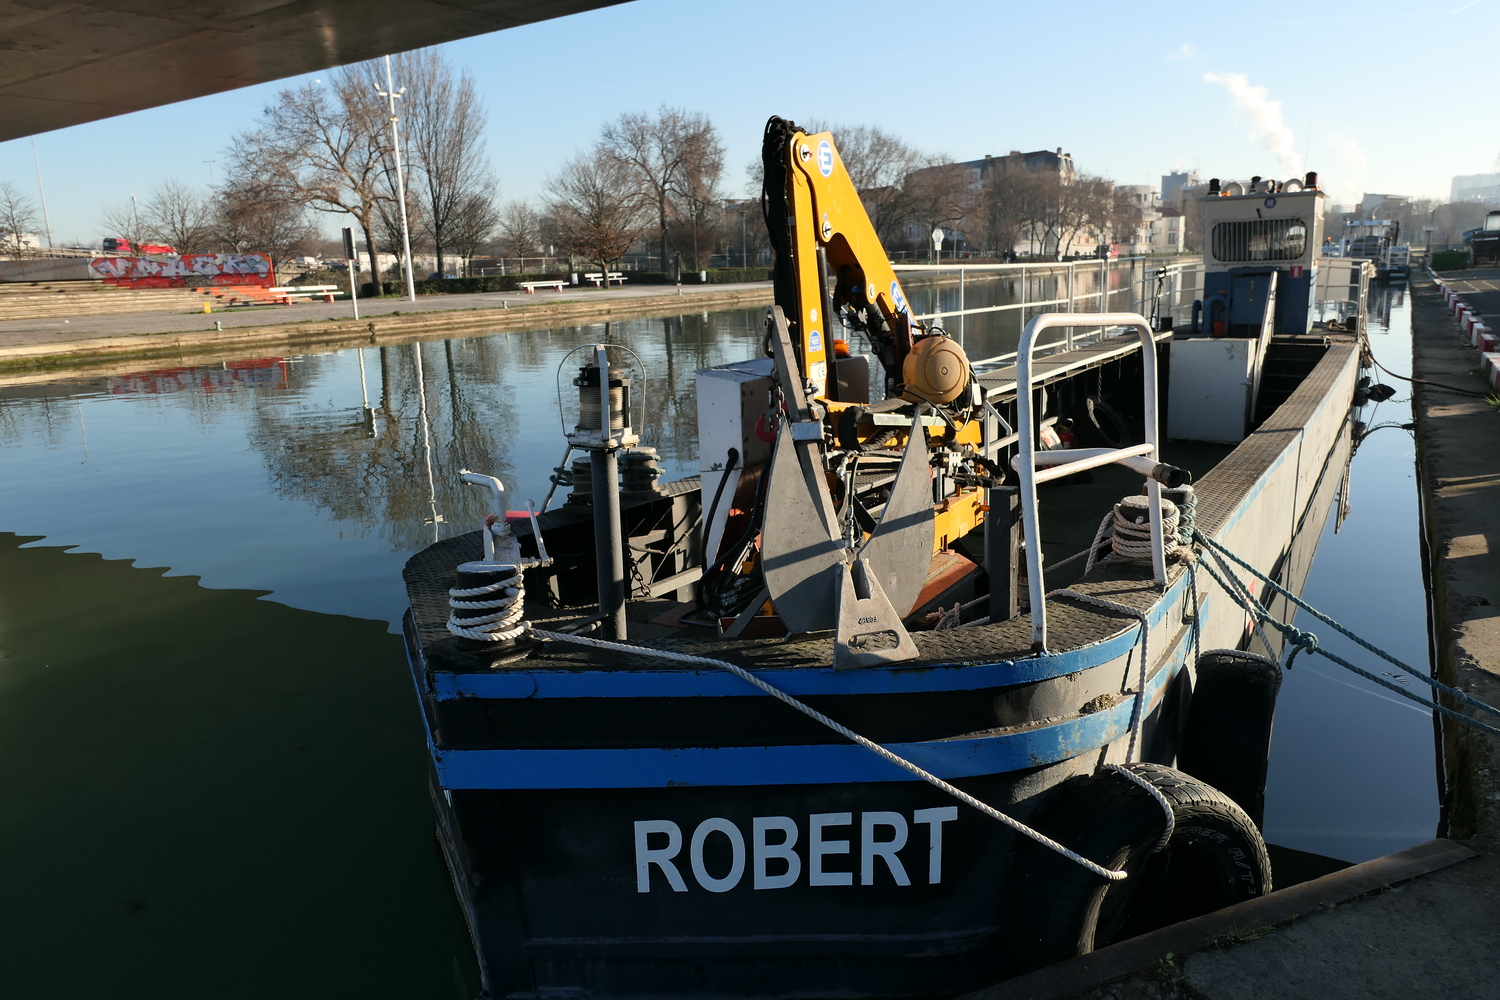 La flotte des canaux compte quatre bateaux ramasseurs de déchets dont le Robert qui est amarré à quelques mètres de l’Acoupa © Globe Reporters